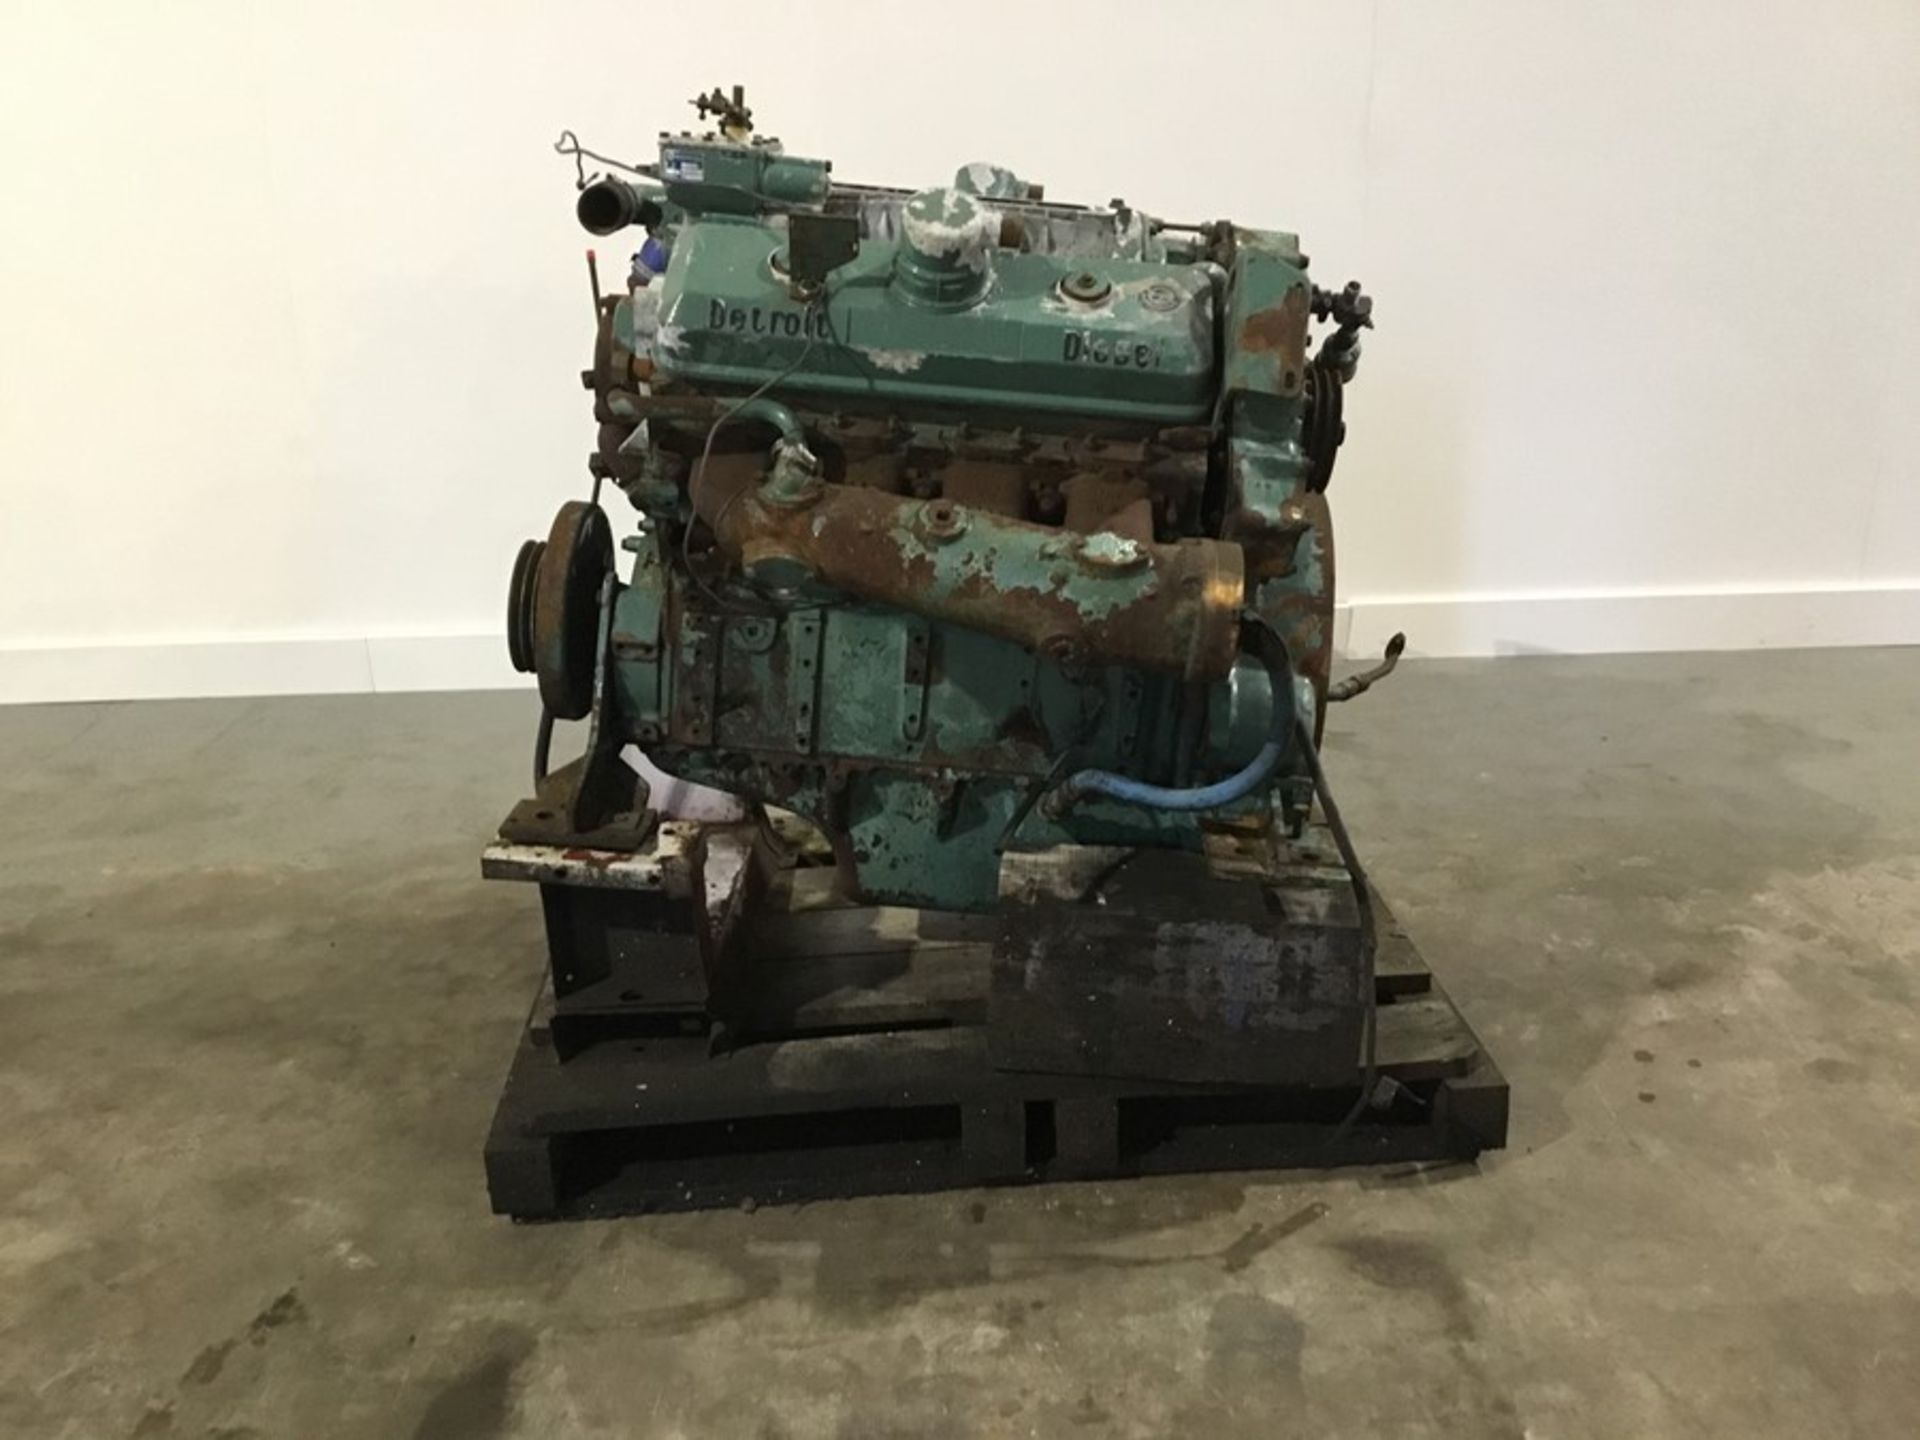 Detroit 8V71 Diesel Engine: Detroit 8v71 v8 Non Turbo Serial Number: 8FW000229*8082-3301 used - Image 7 of 18